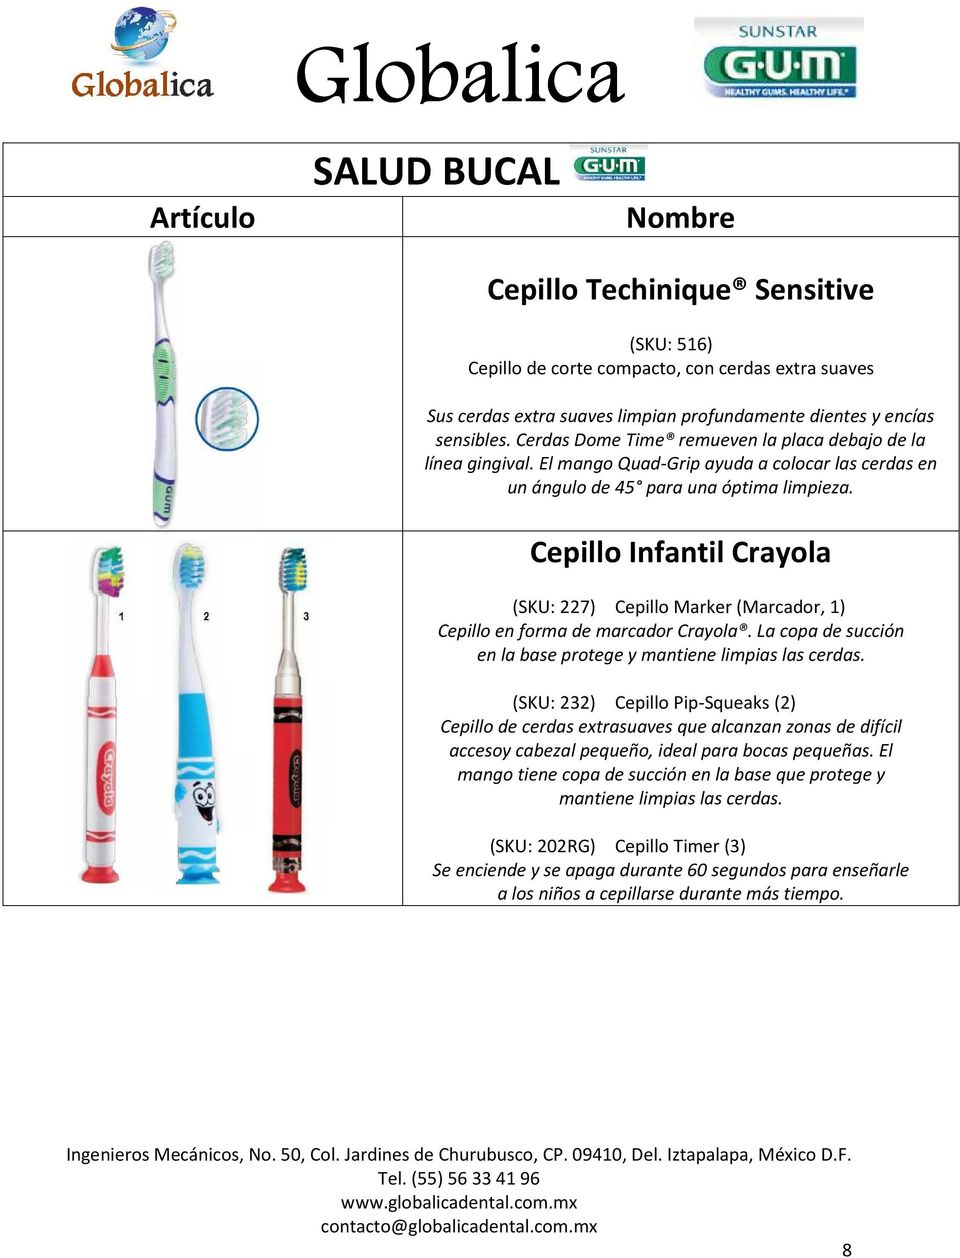 Cepillo Infantil Crayola (SKU: 227) Cepillo Marker (Marcador, 1) Cepillo en forma de marcador Crayola. La copa de succión en la base protege y mantiene limpias las cerdas.